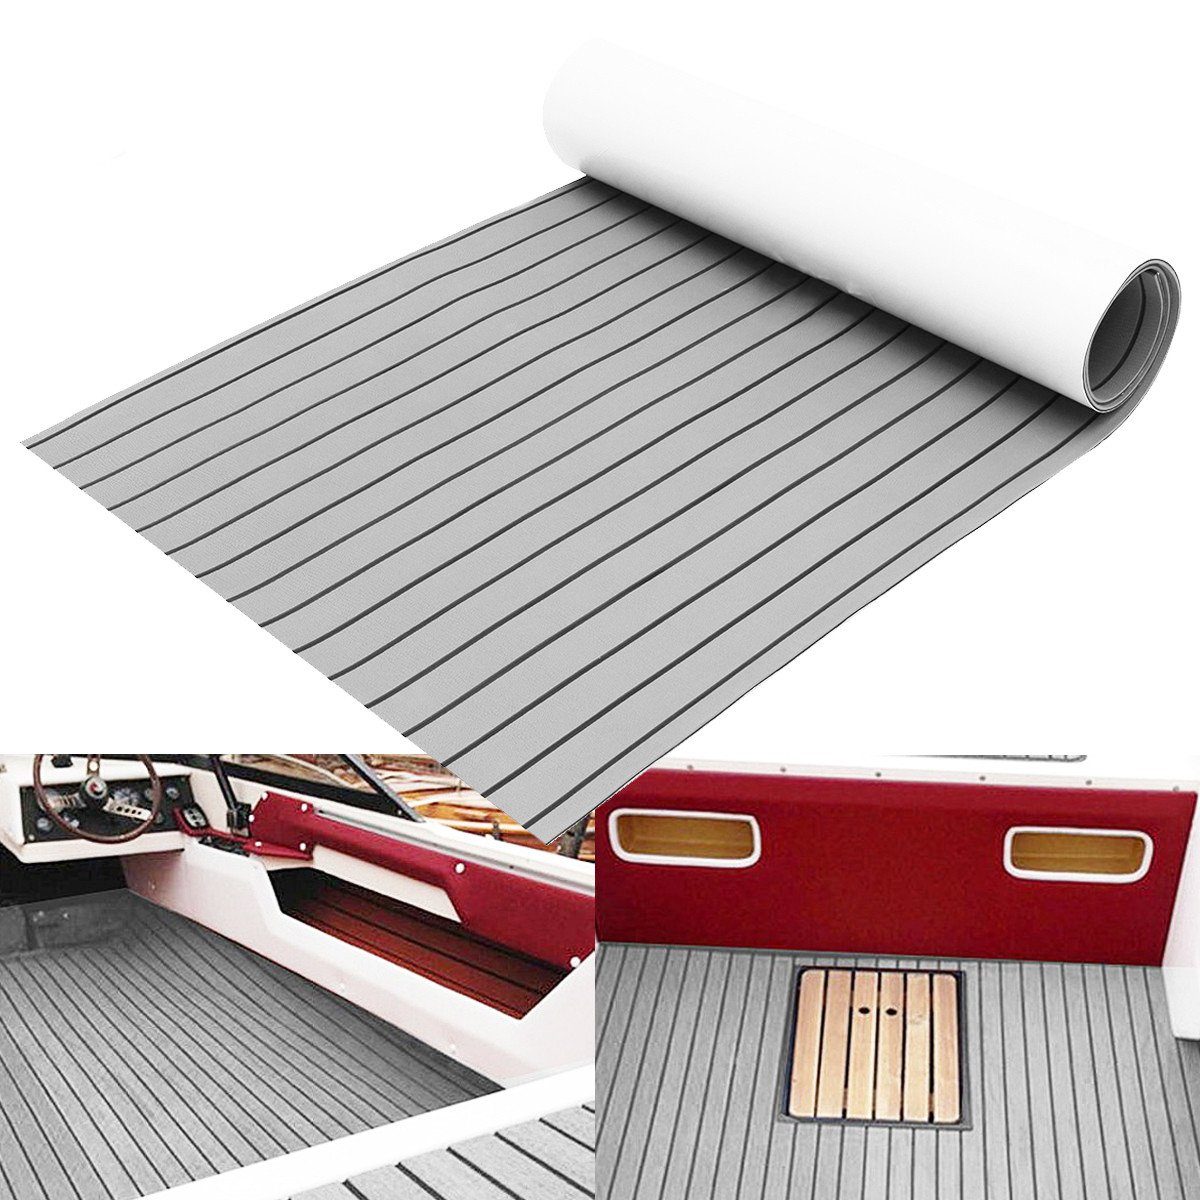 Insma Bodenmatte (240x90cm, 6mm), EVA Schaum Bootsboden Decke Selbstklebend  Bodenmatte Bodenbelag Matte für Yacht Boot online kaufen | OTTO